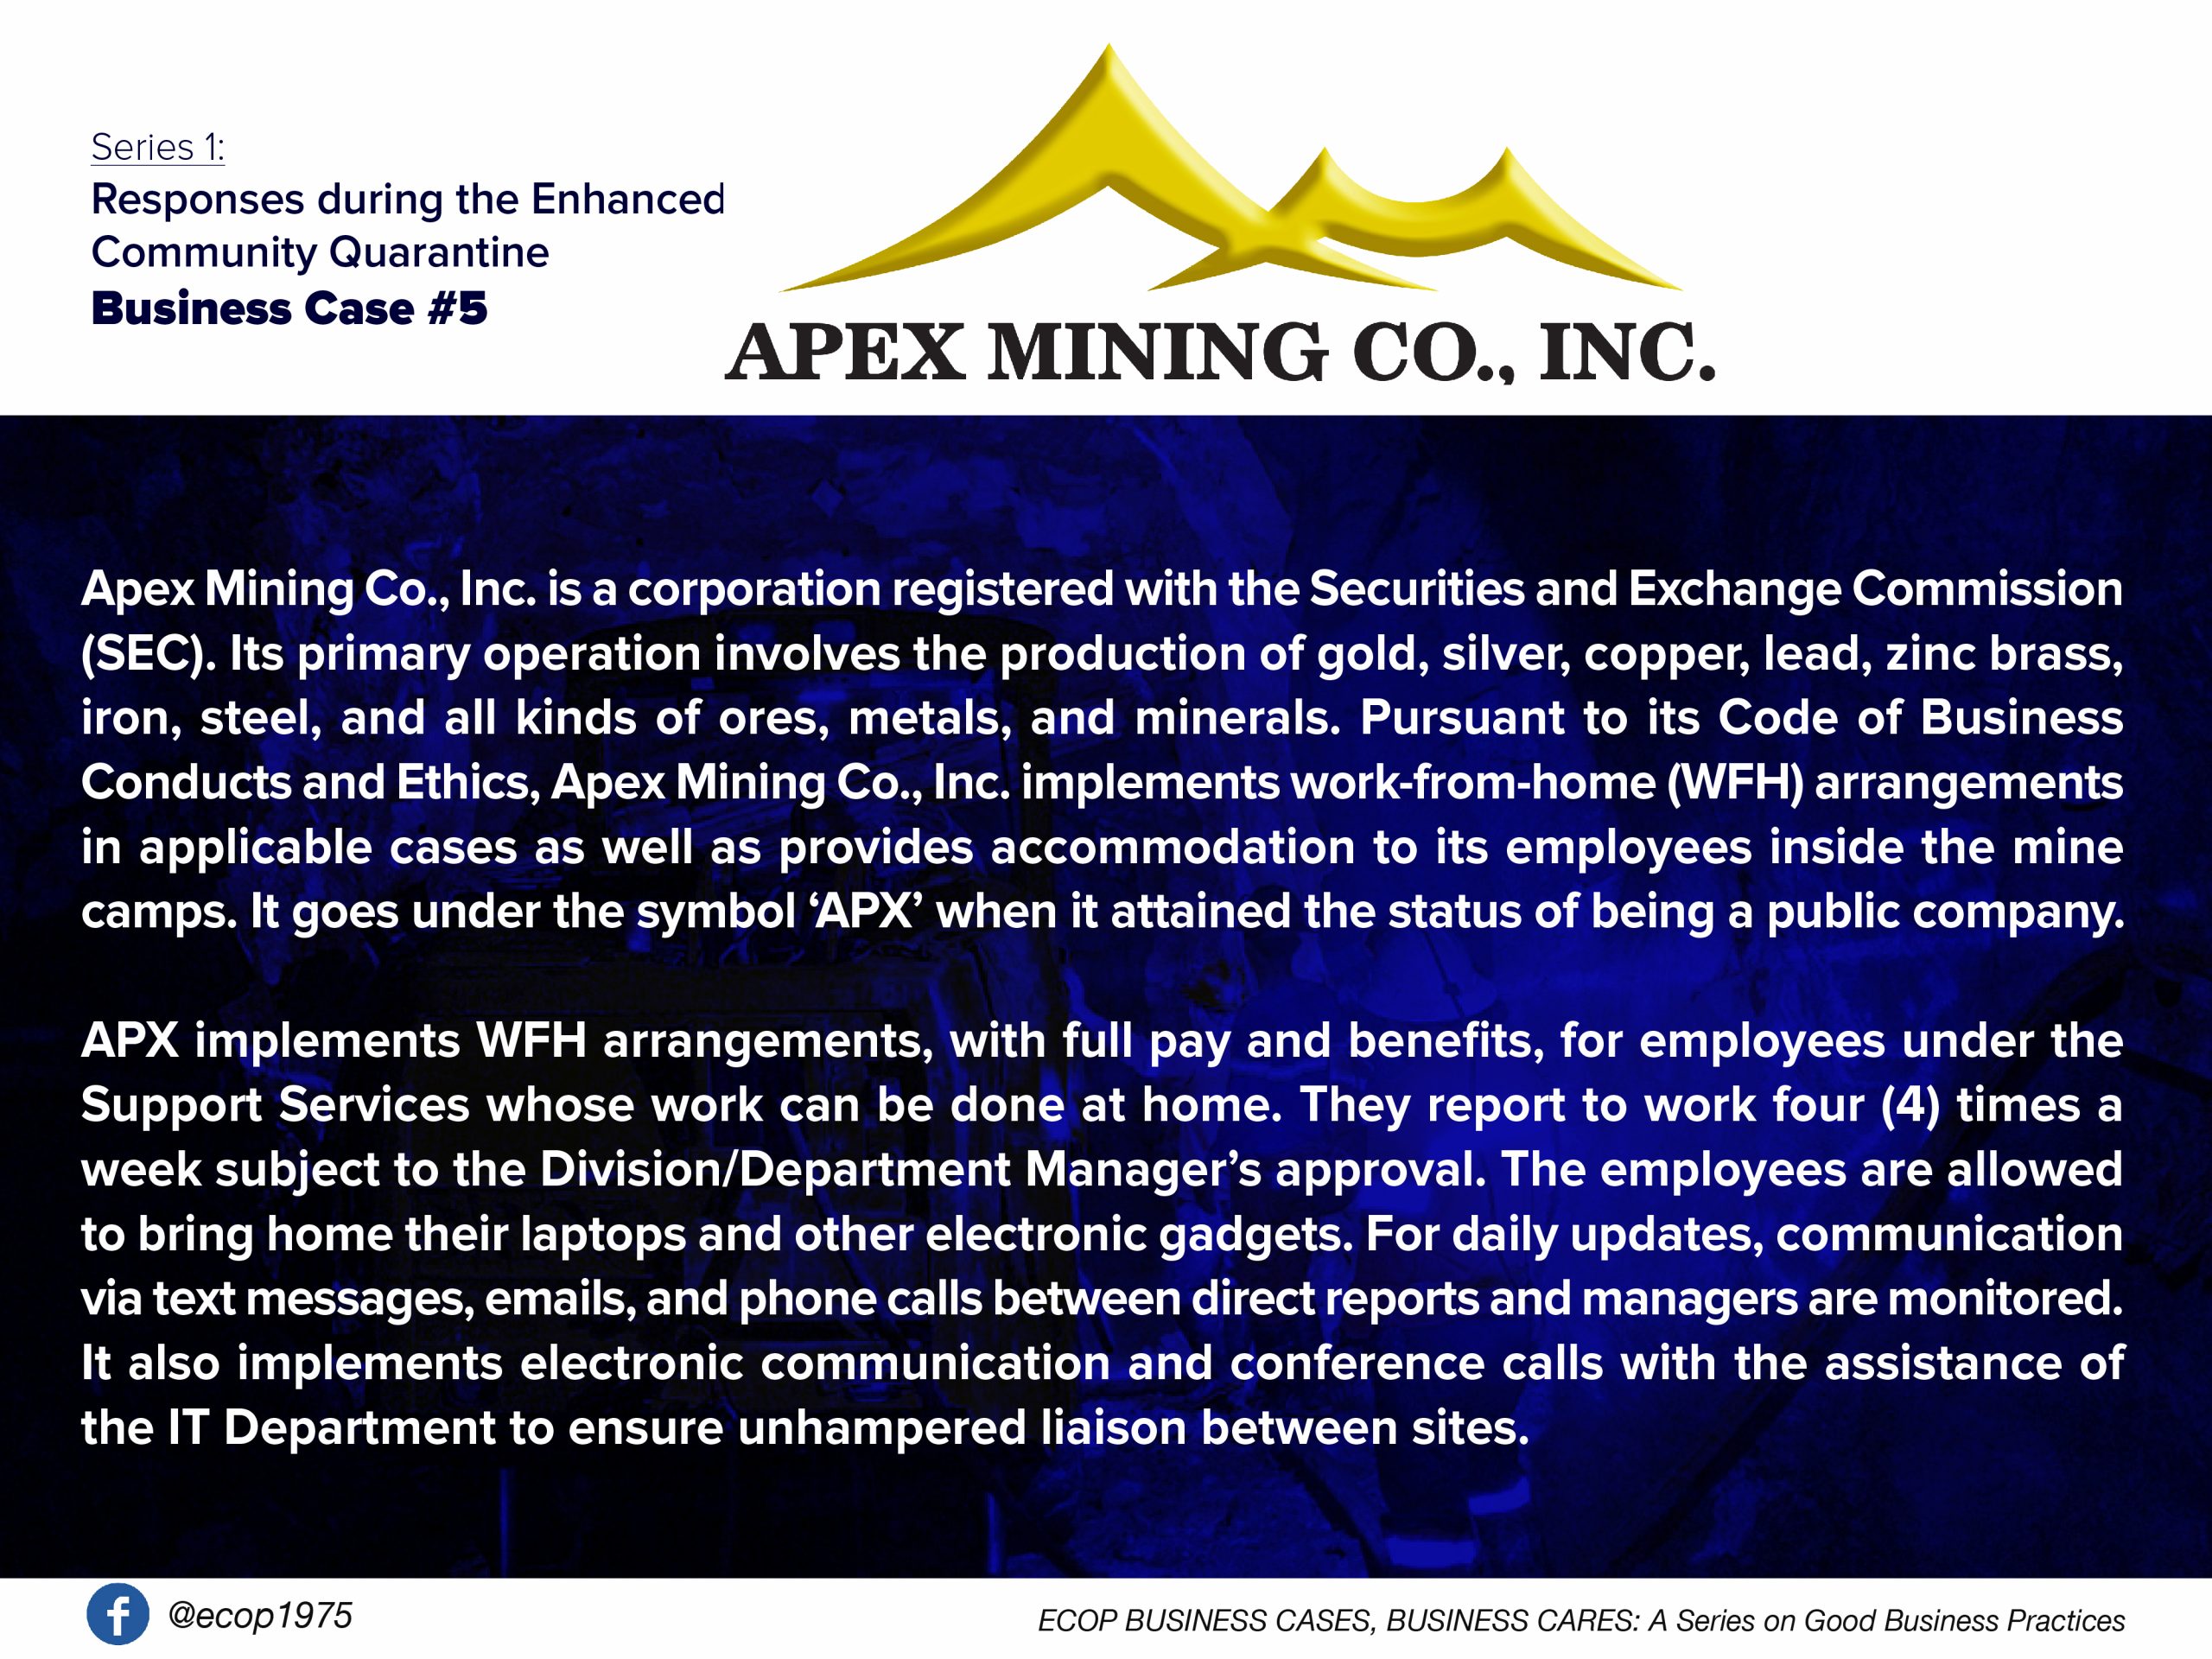 01-Apex Mining Co., Inc. amid the COVID-19 crisis